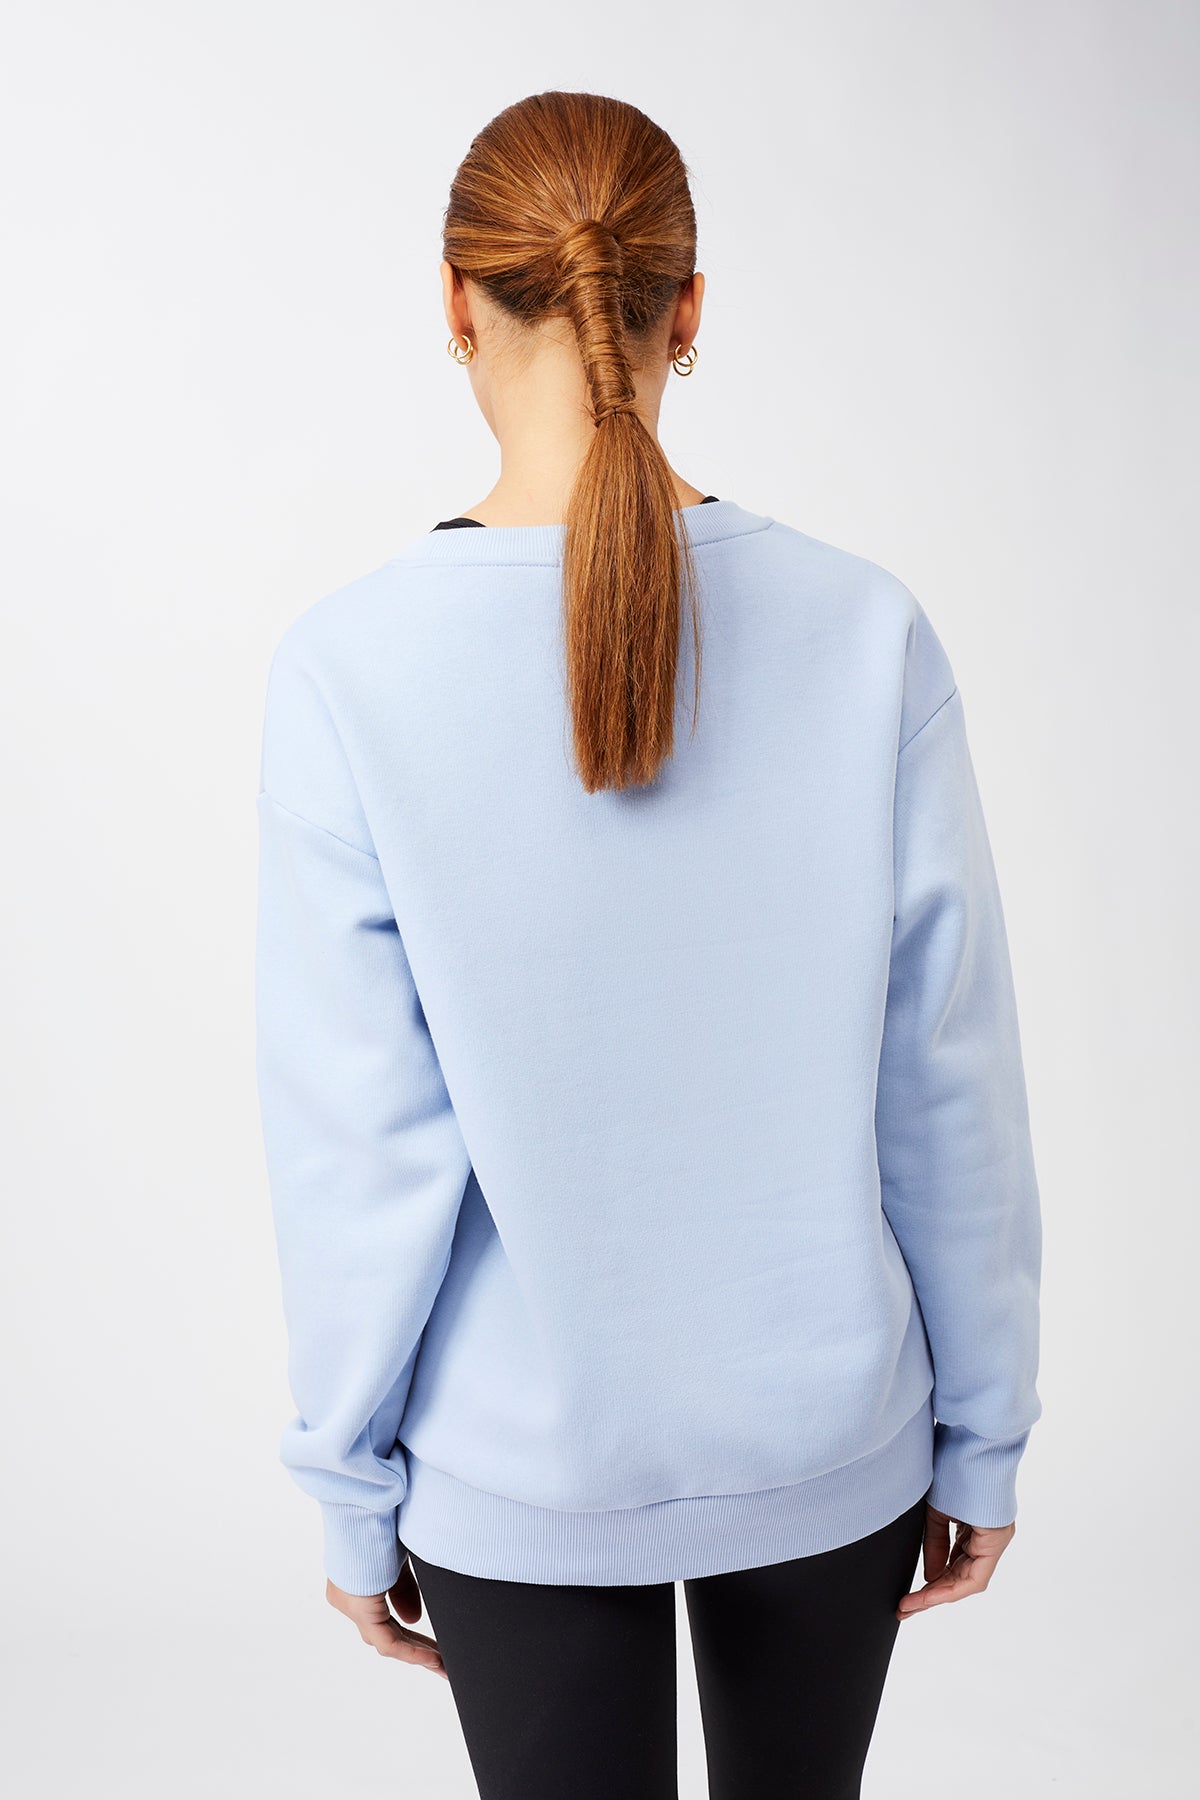 Mandala Yoga Pullover Blau Rückseite - Peace Sweater